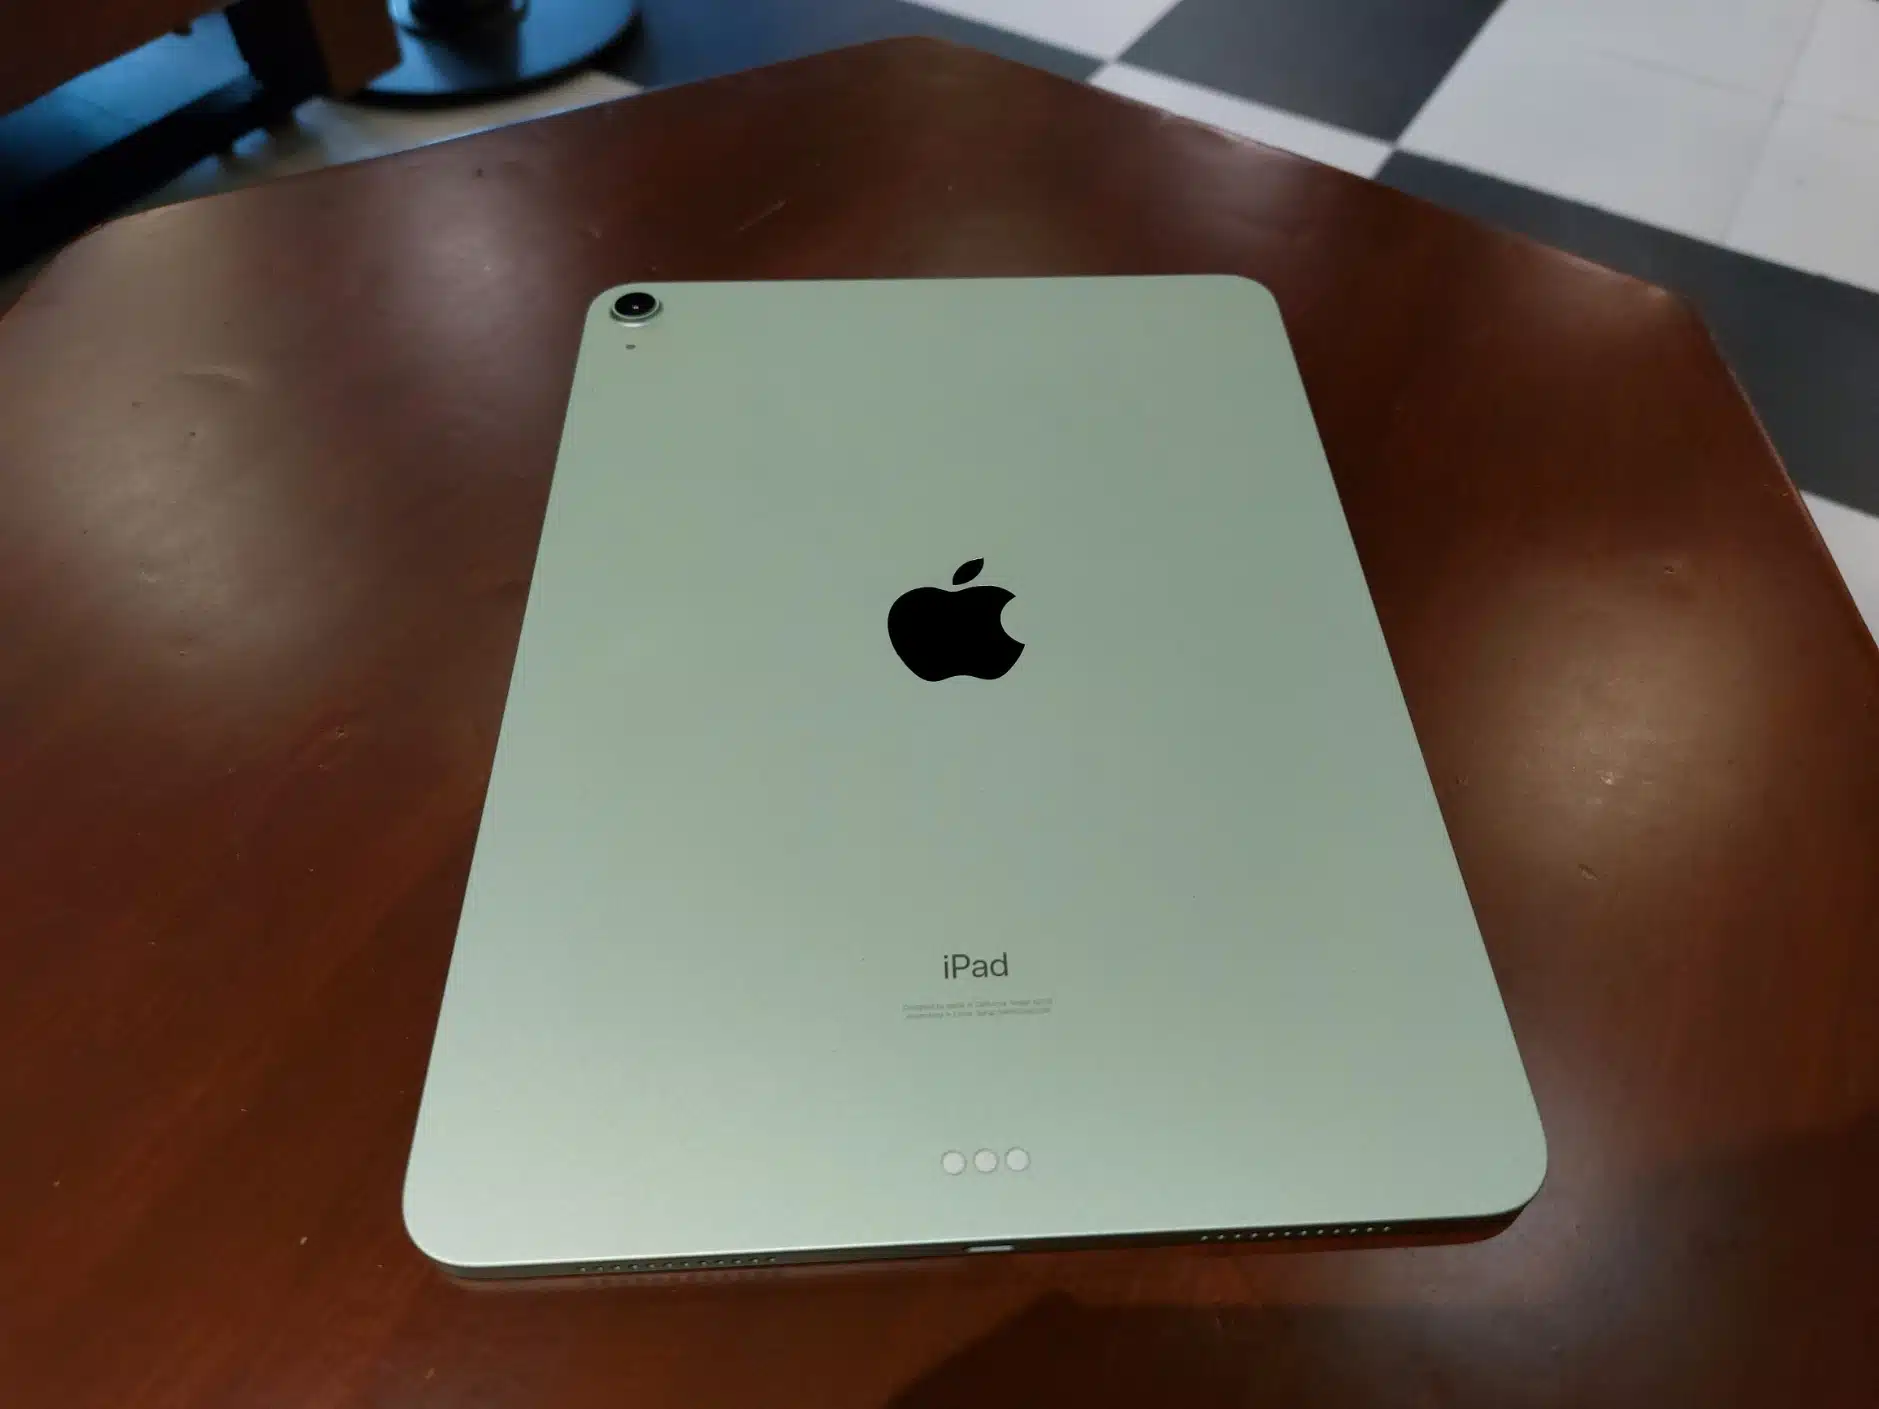 iPad Air 4 Review: Design
